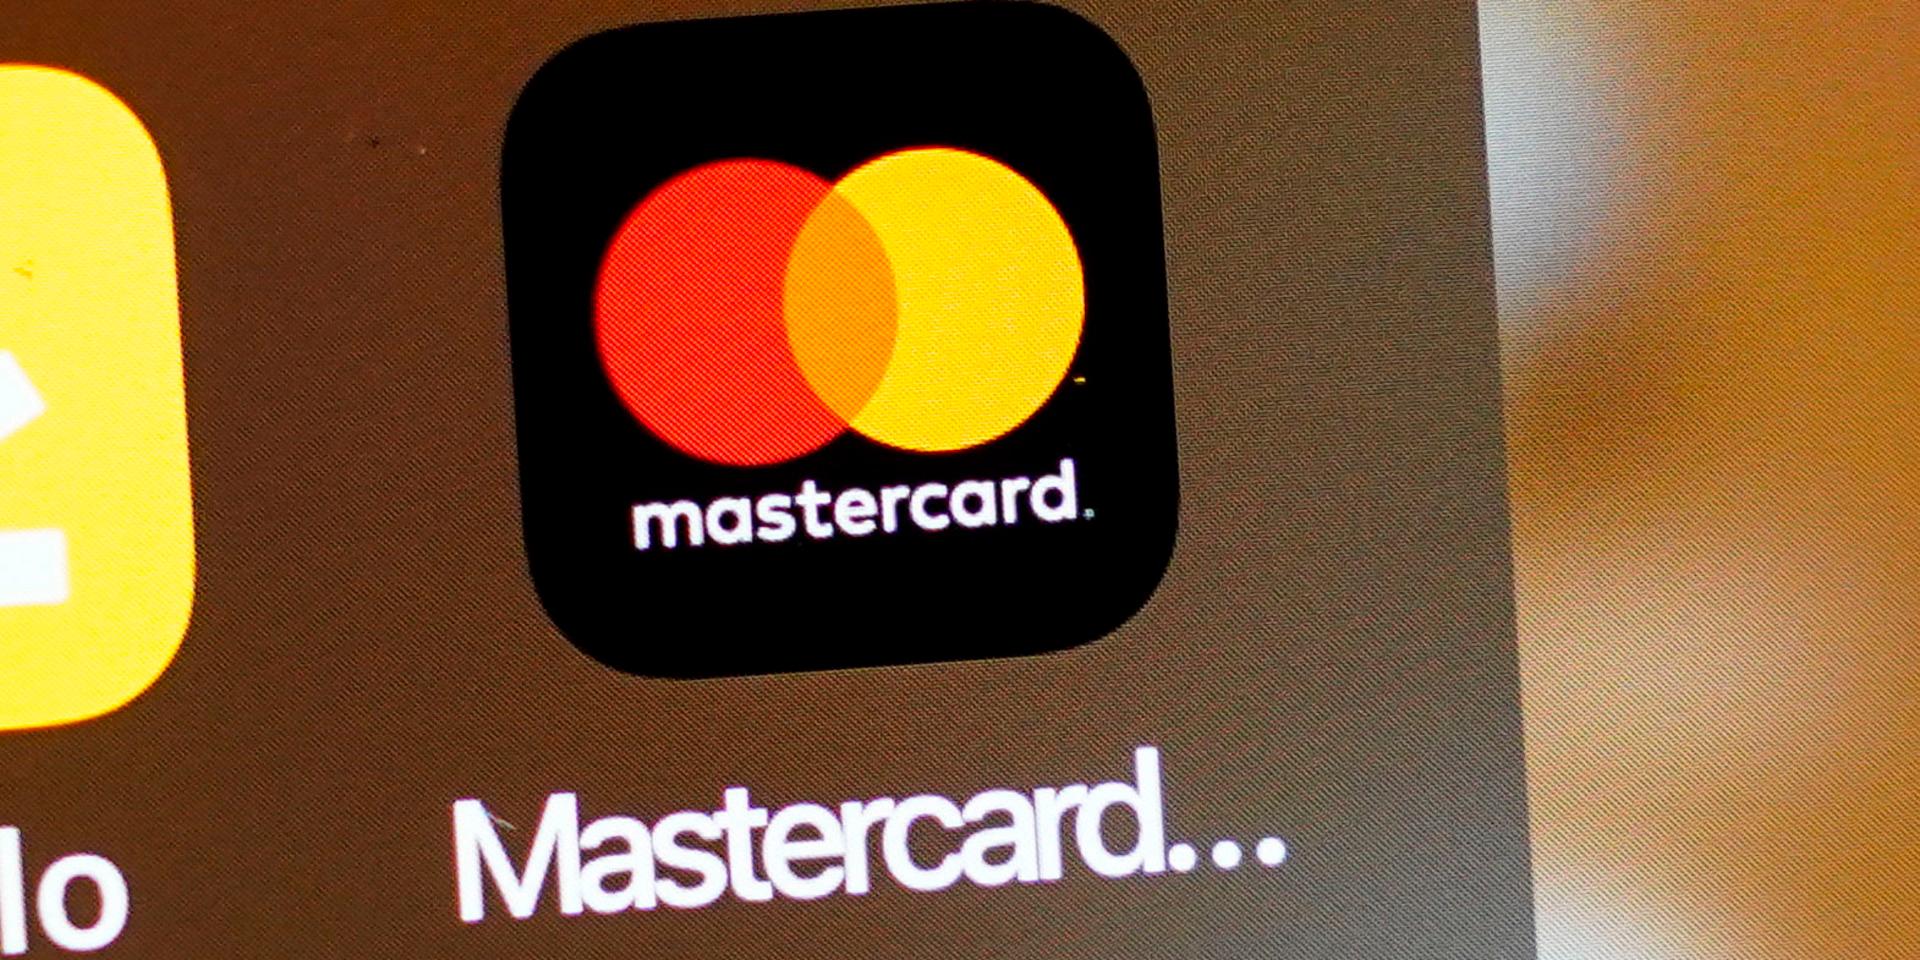 Genom att ladda upp en selfie i Mastercards app kommer konsumenter snart kunna betala genom att få sitt ansikte skannat i affären.